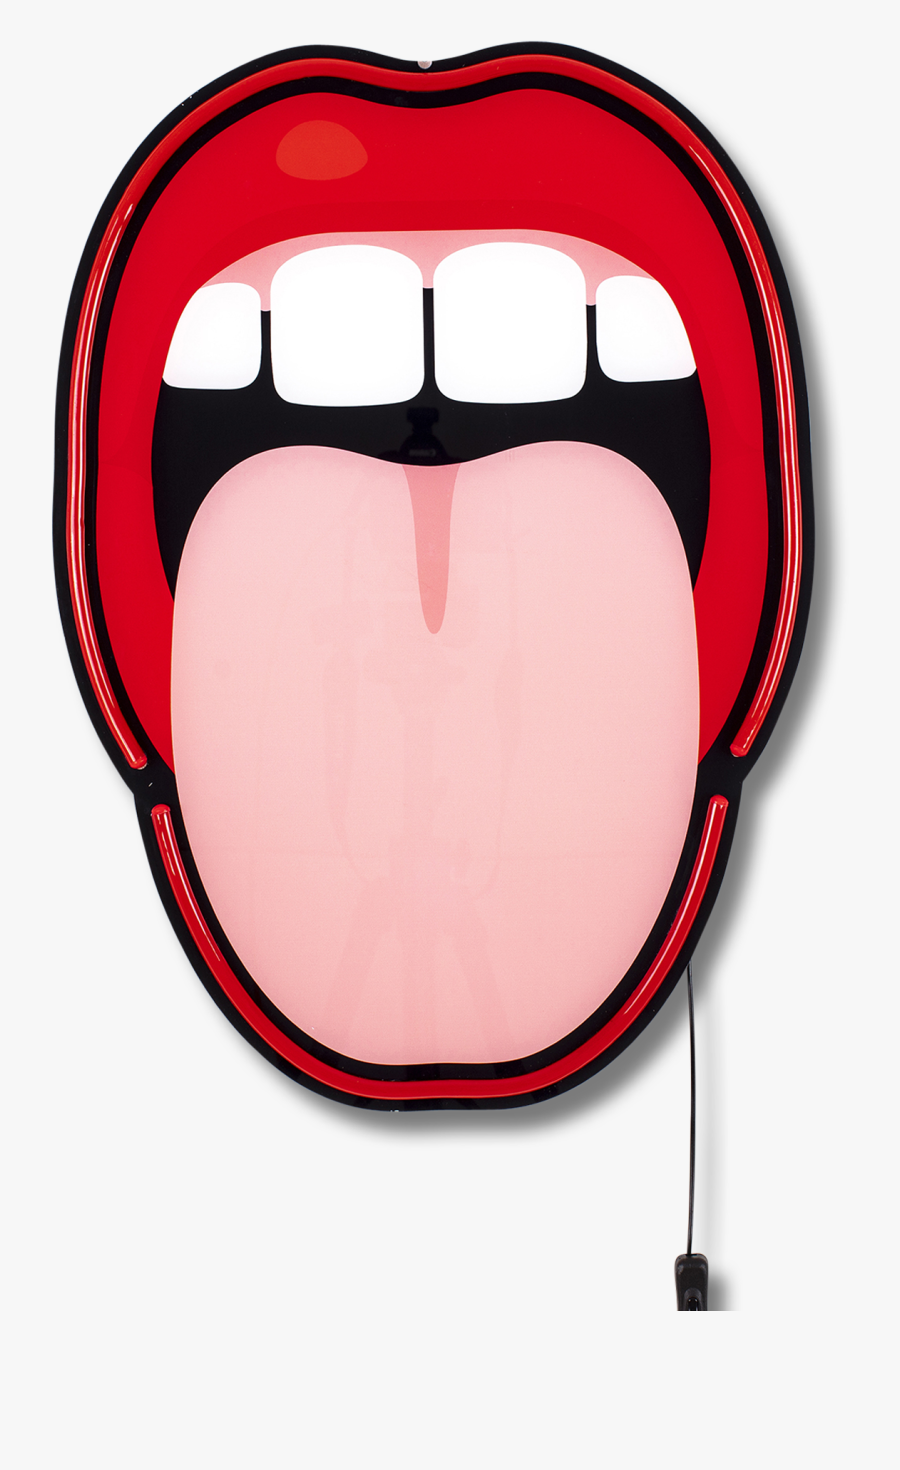 Led Lamp Tongue - Studio Job Blow, Transparent Clipart